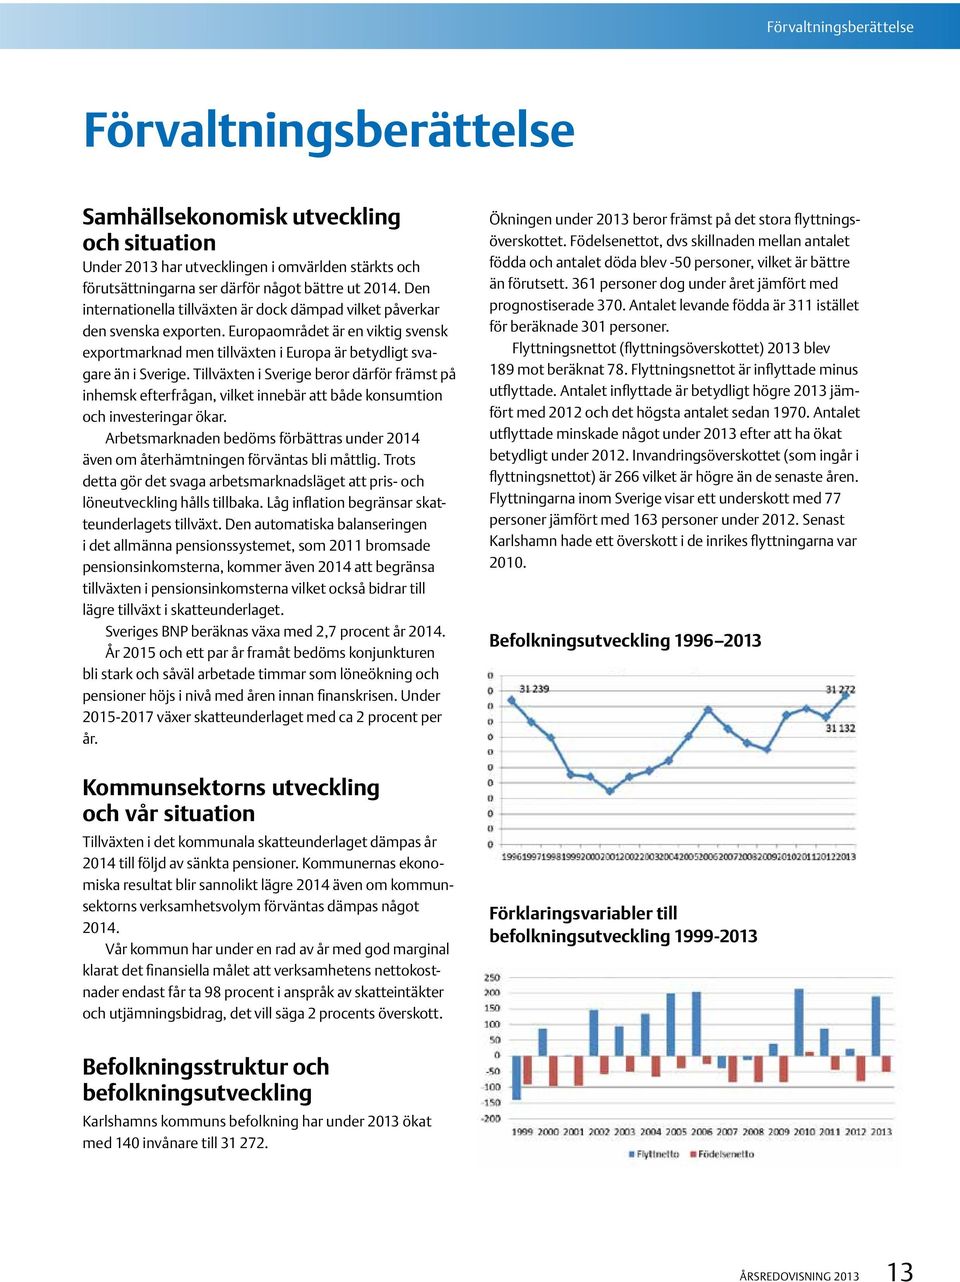 Tillväxten i Sverige beror därför främst på inhemsk efterfrågan, vilket innebär att både konsumtion och investeringar ökar.